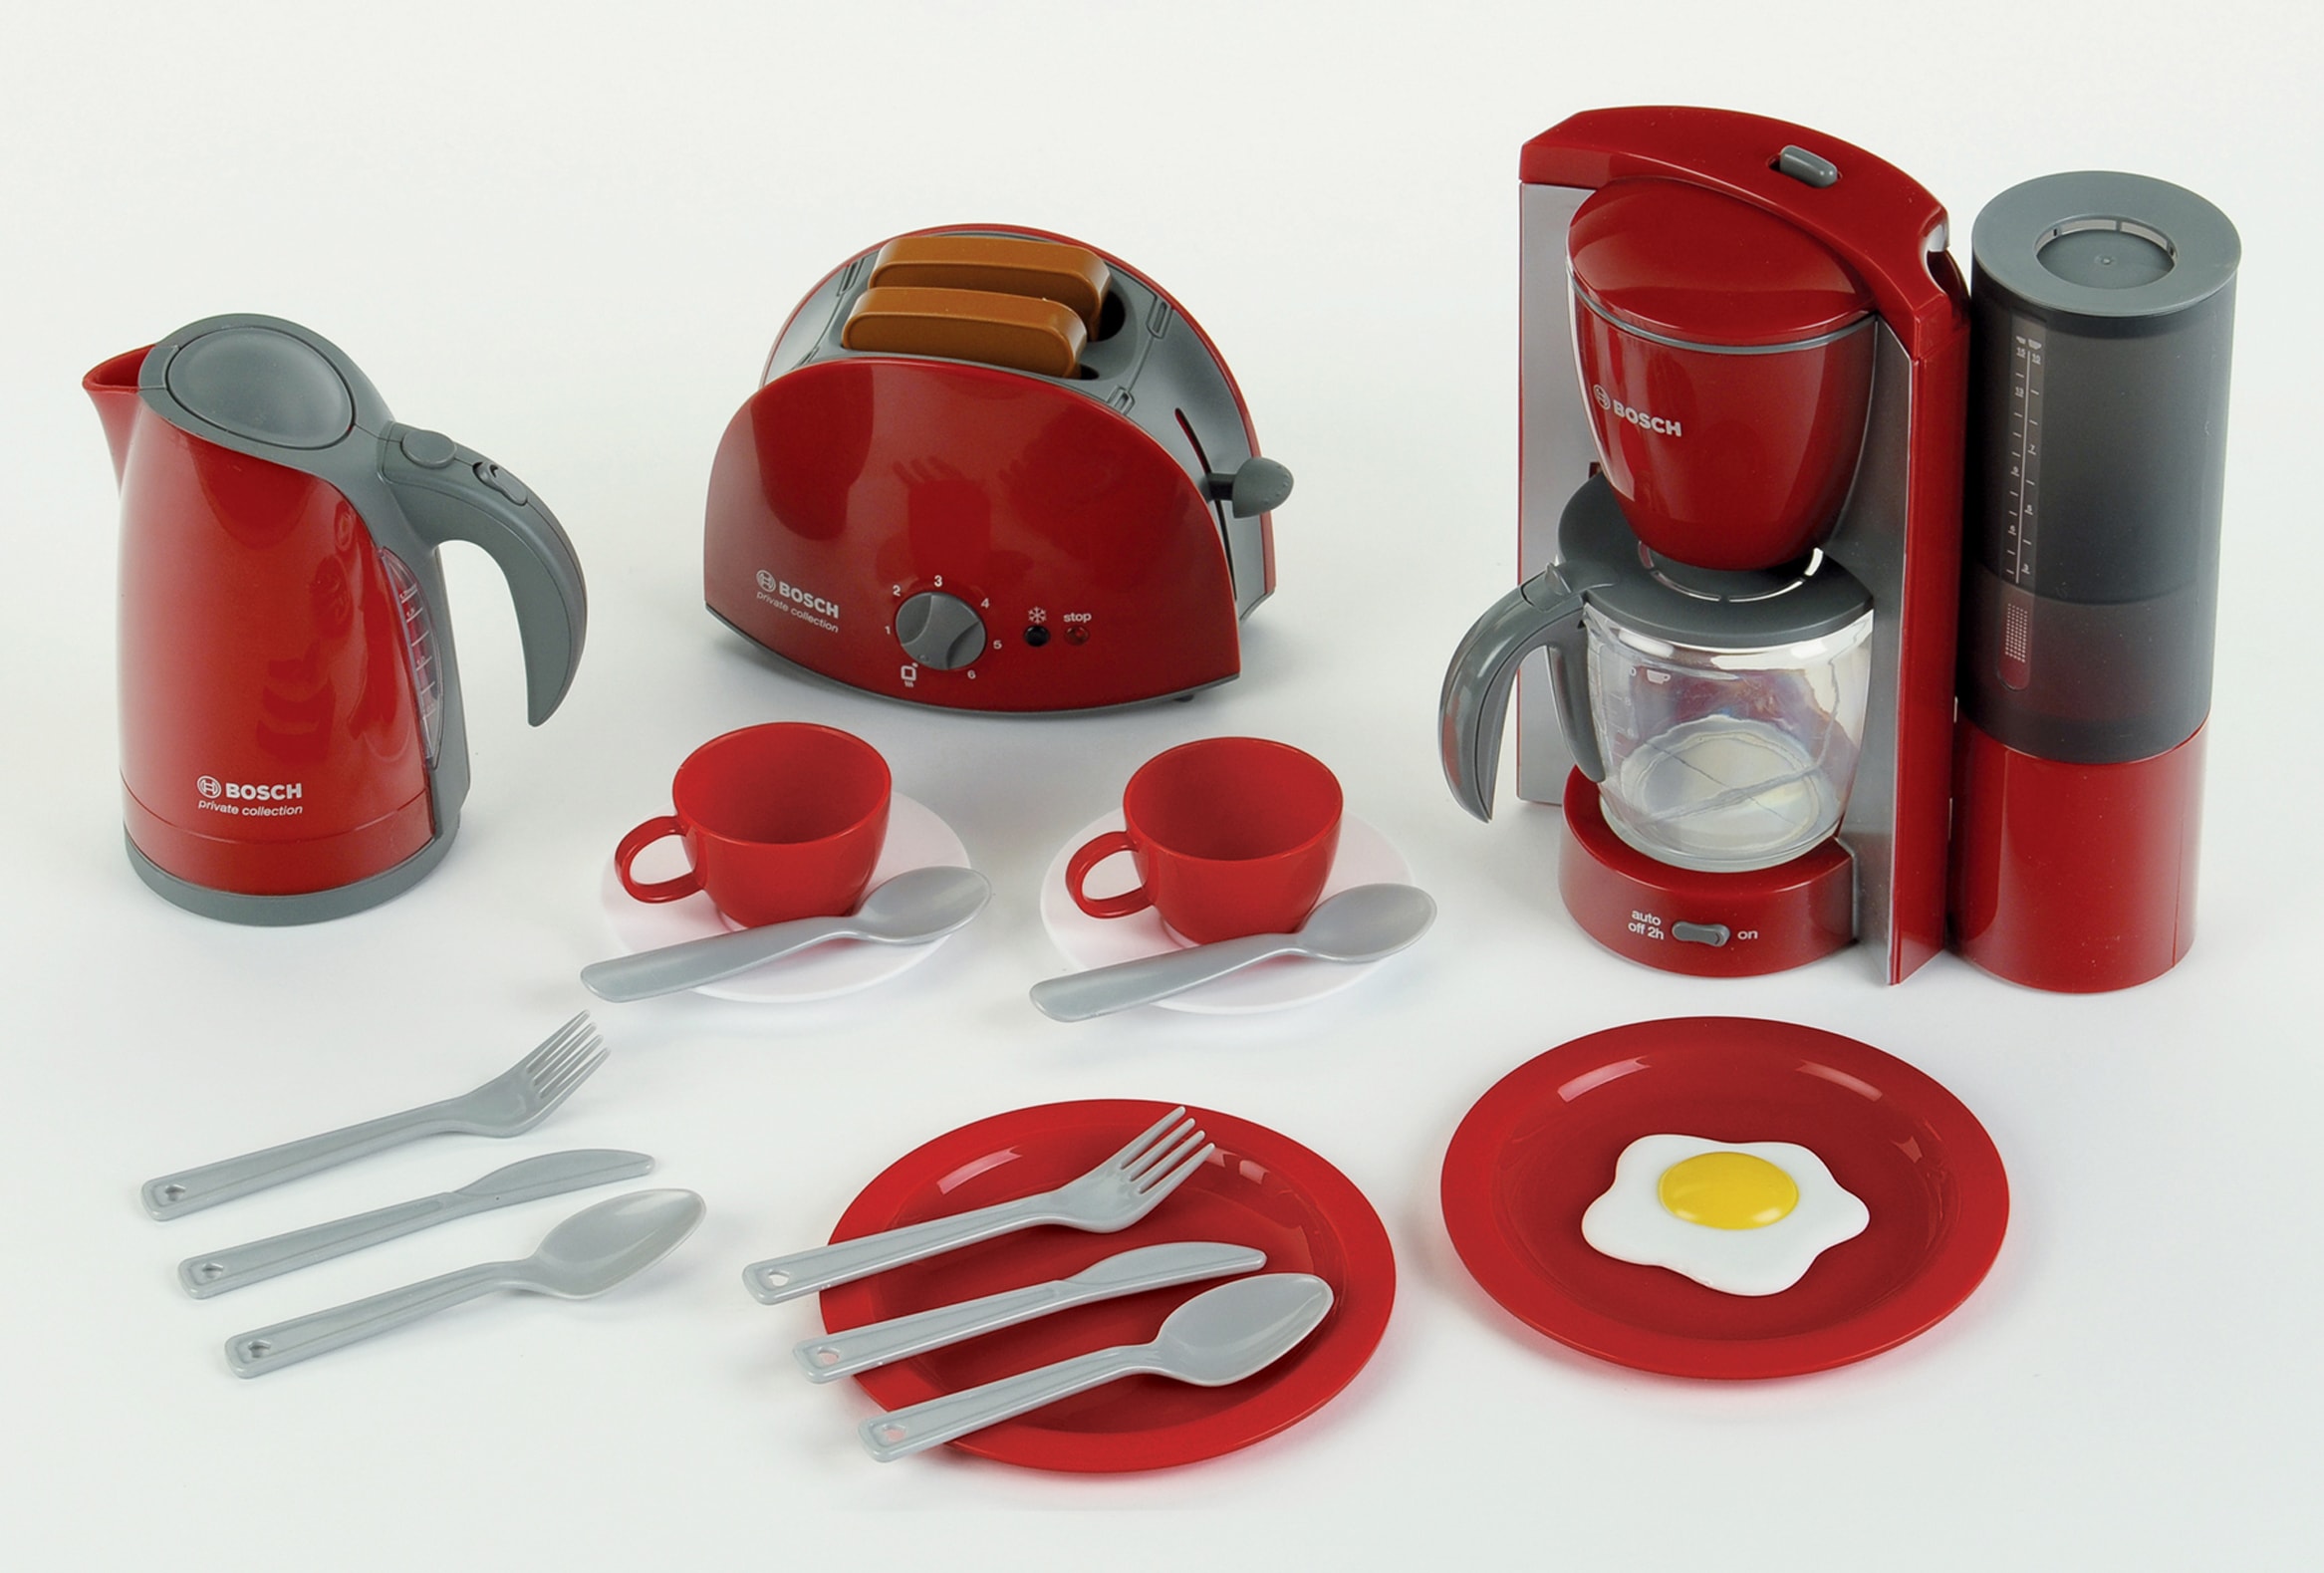 Kinder-Küchenset »Bosch Frühstückset«, (Set, 16 tlg.), Wasserkocher mit Wasser befüllbar